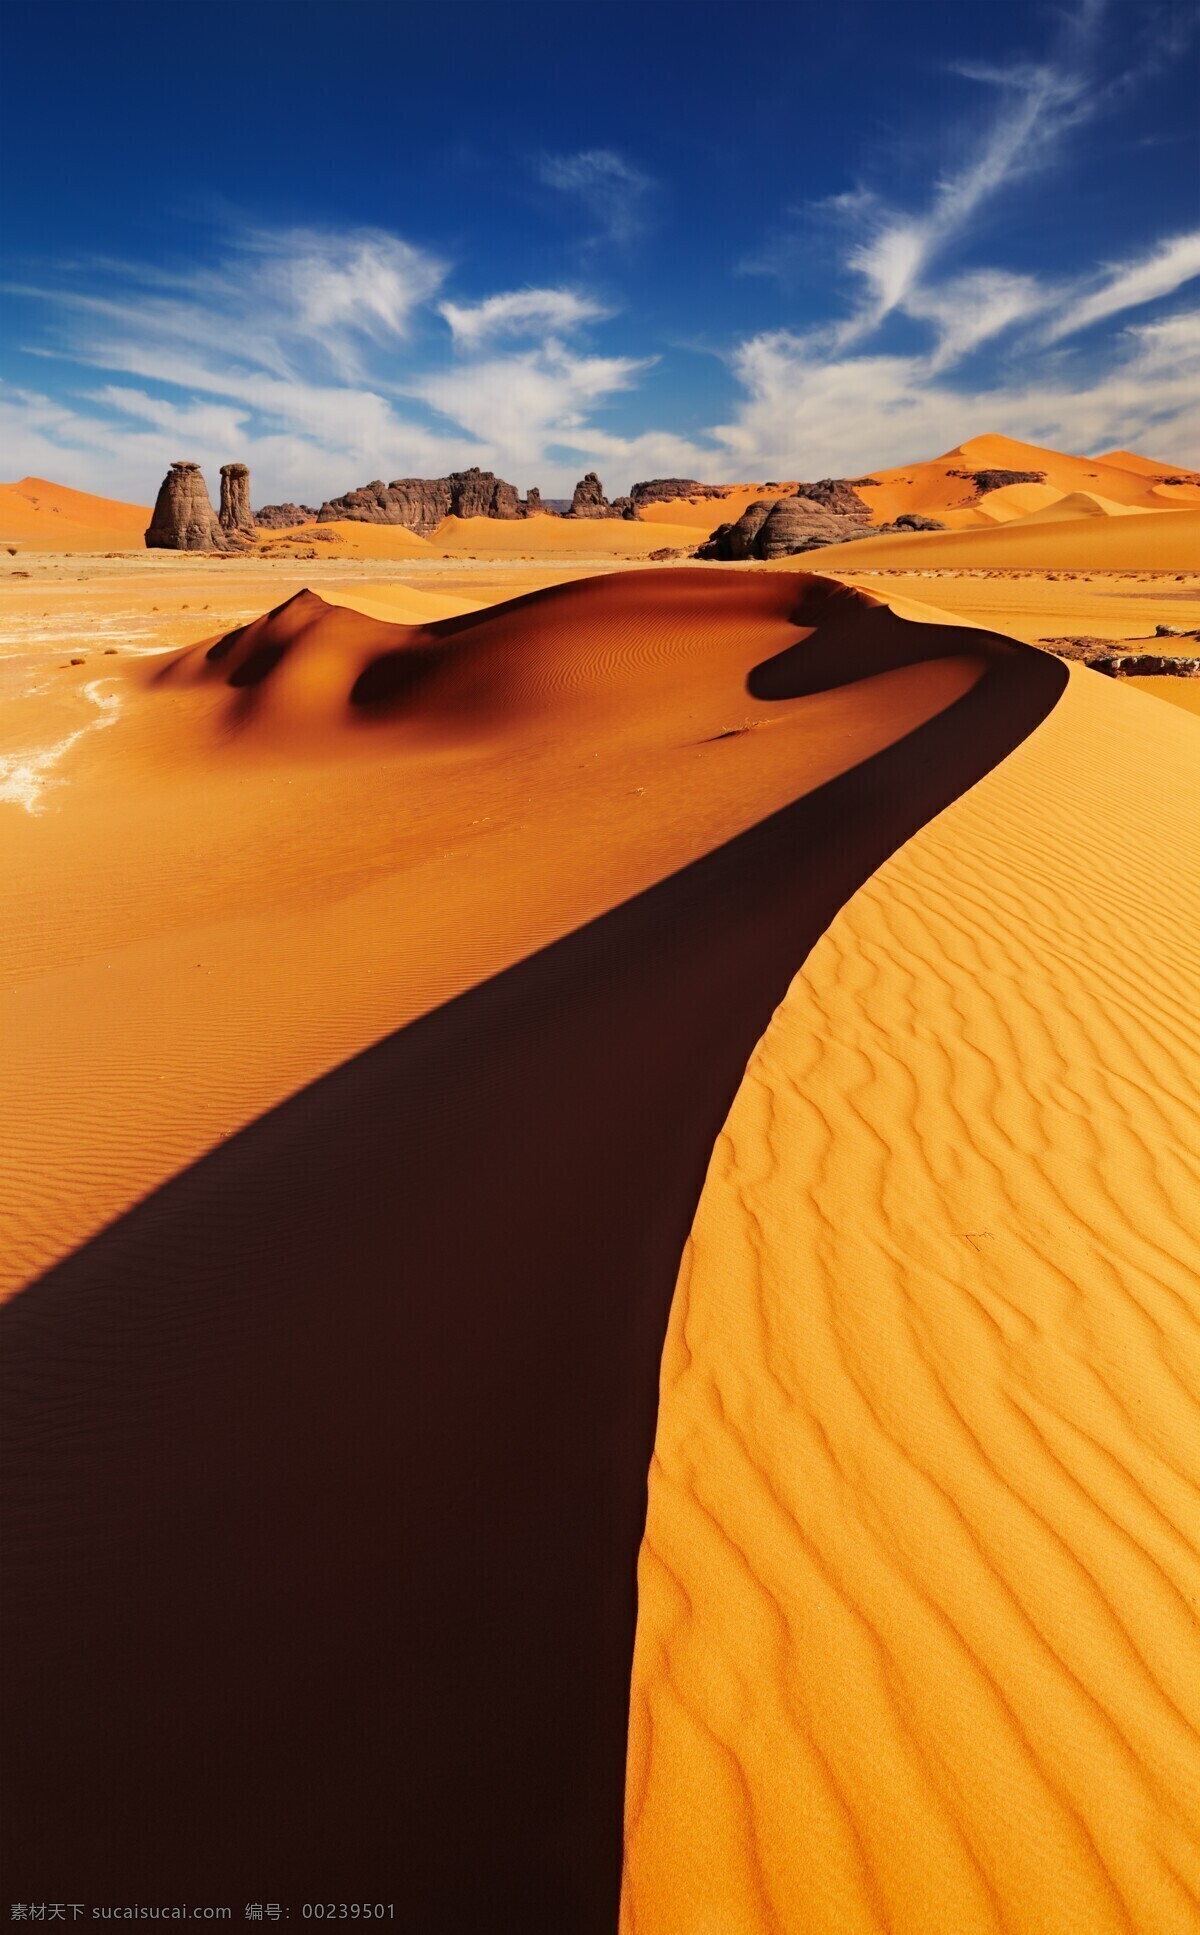 沙漠戈壁图片 沙漠 沙丘 沙子 砂 绿植 植物 草 戈壁滩 细沙 纹理 纹路 高低 雾霾 橙色 黄色 干燥 自然景观 自然风景